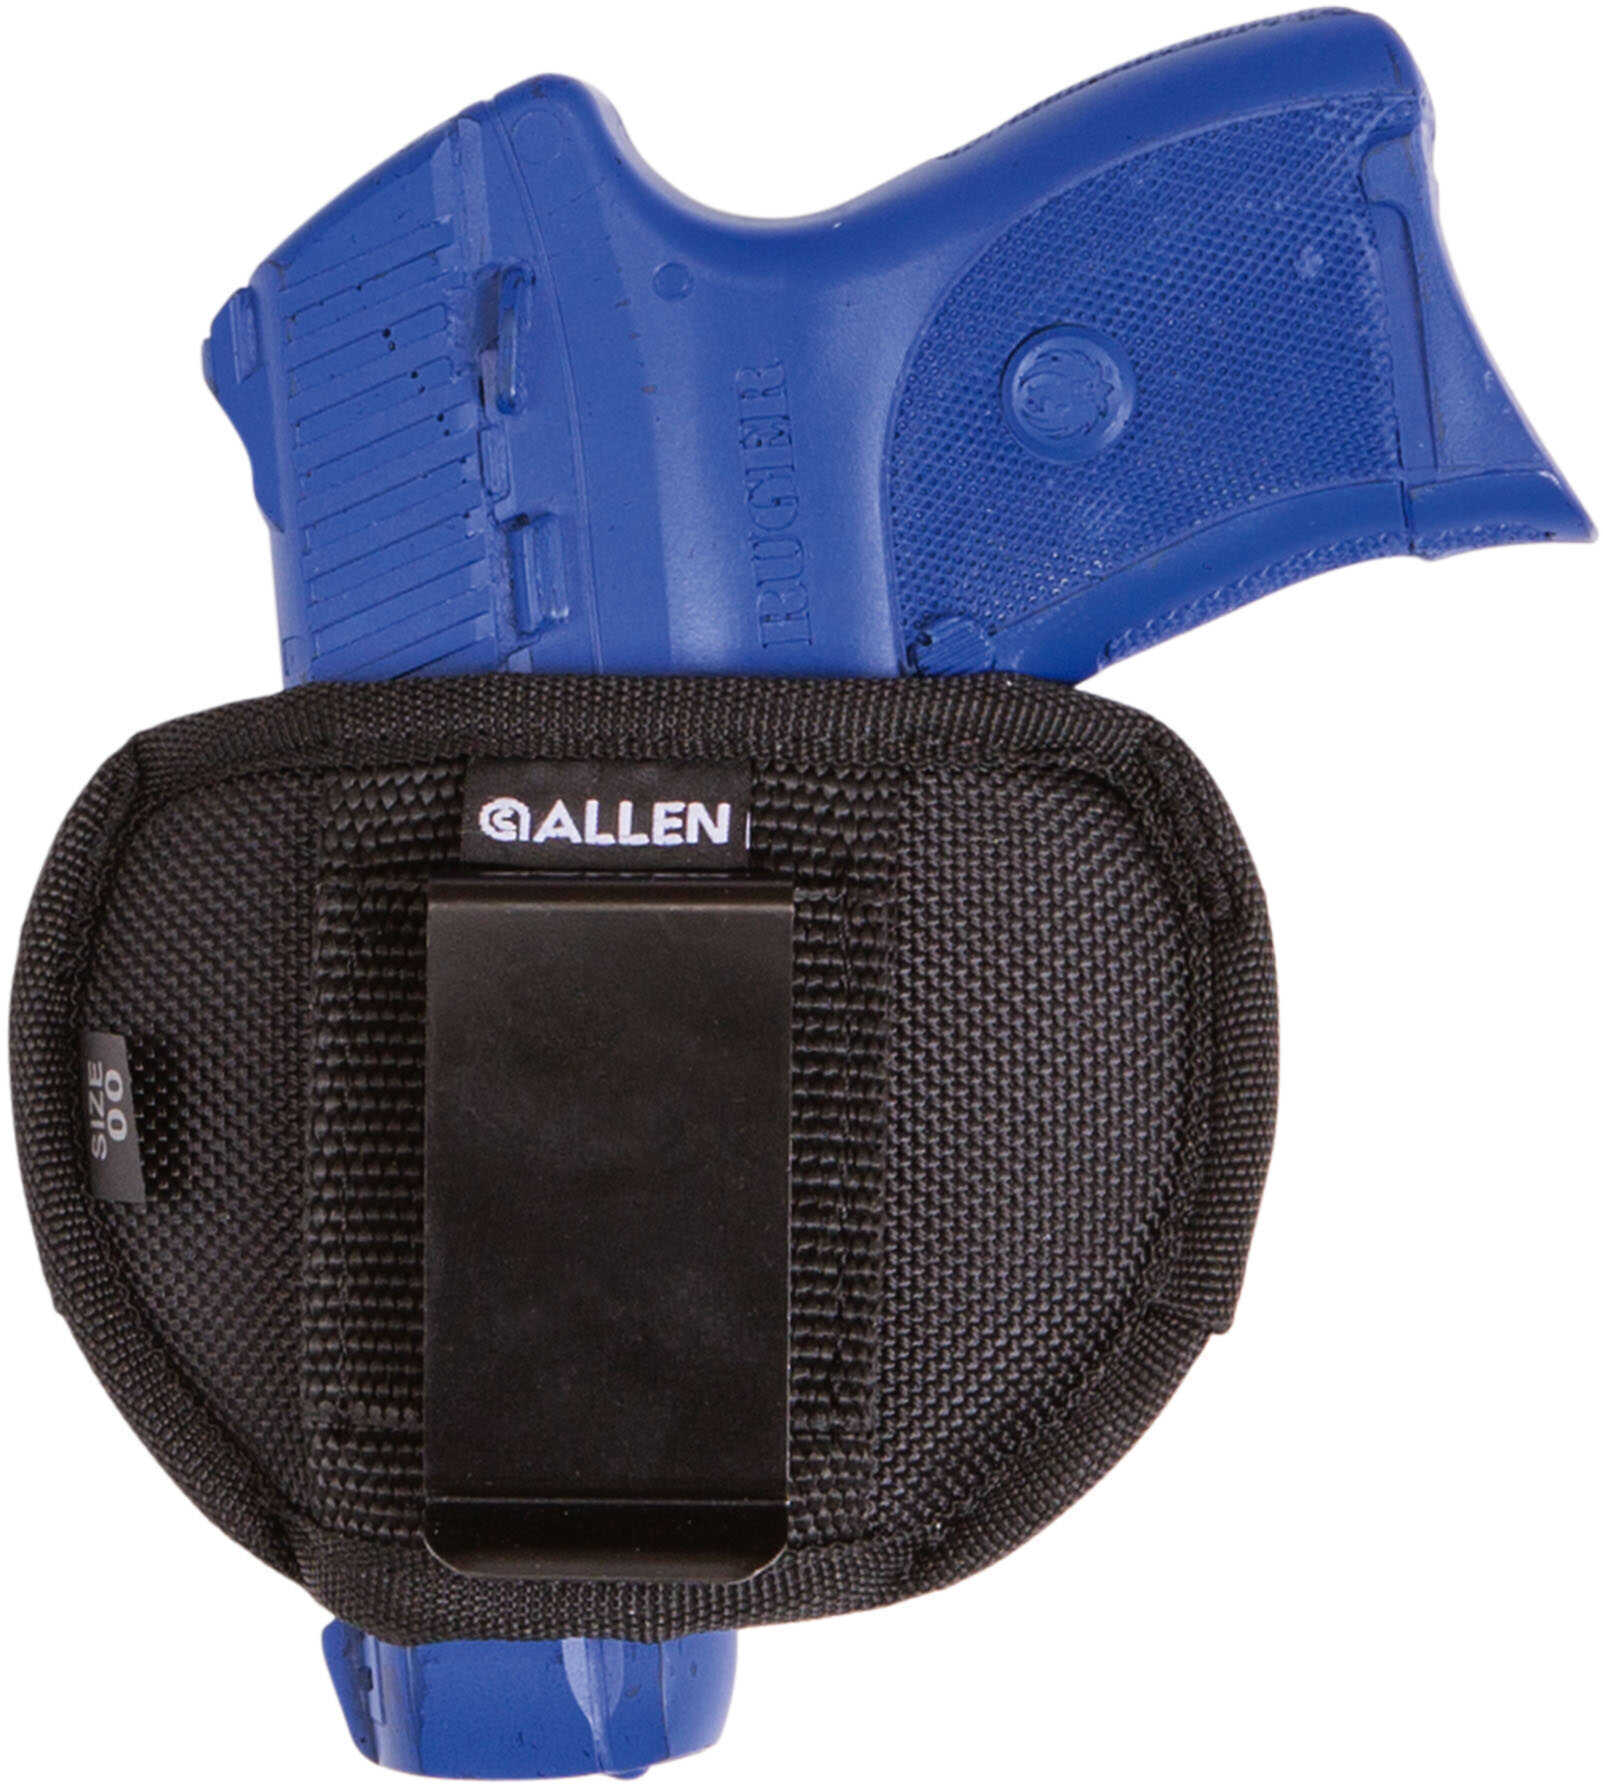 Allen Company Sheridan Belt Slide Holster for Right- or Left-Hand Carry